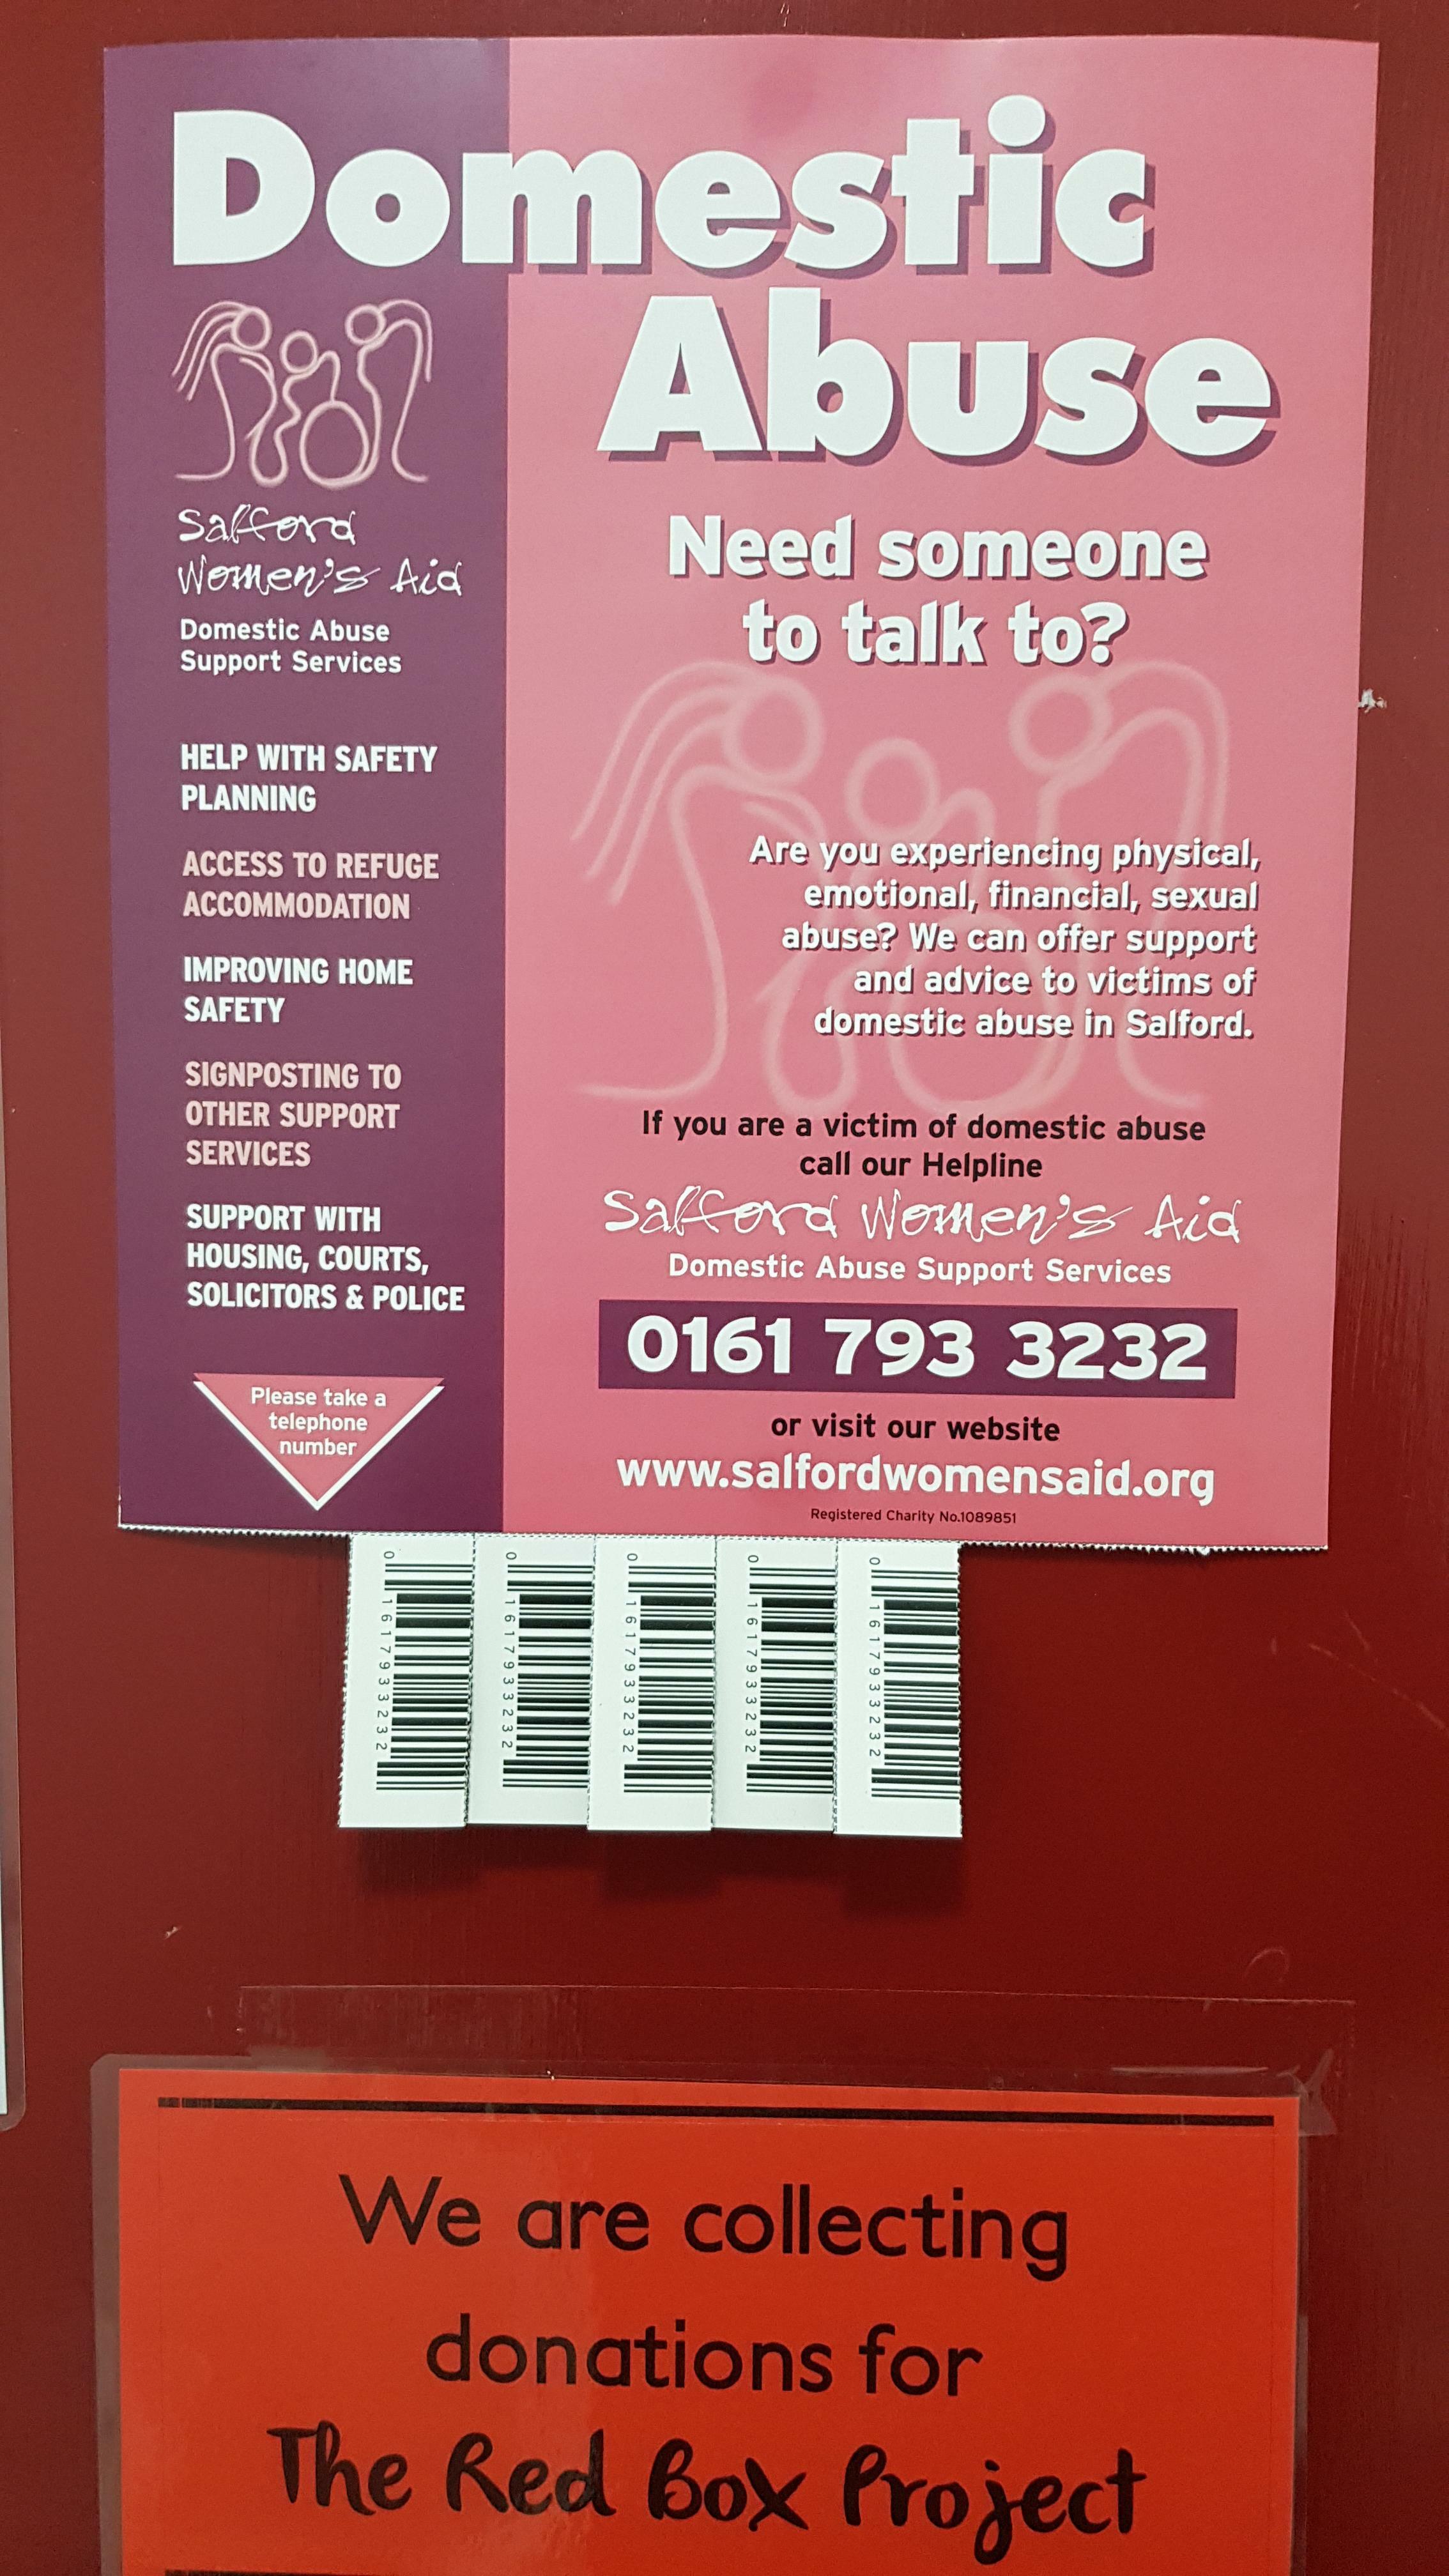 Le numéro de téléphone est déguisé en code-barres sur les déchirures de cette affiche contre les violences domestiques.